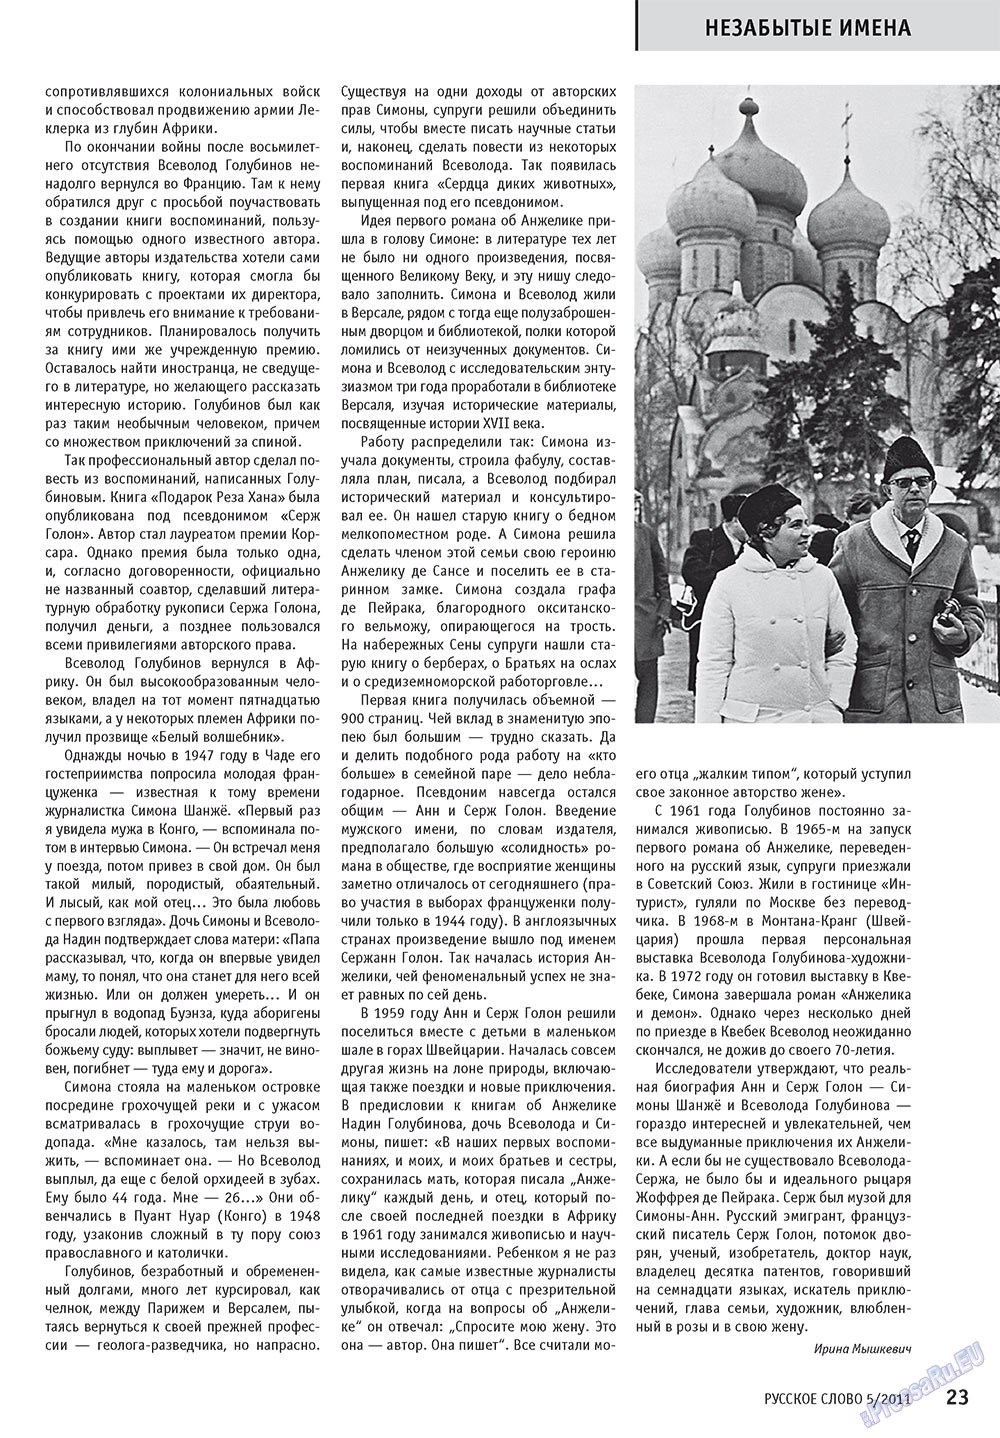 Русское слово (журнал). 2011 год, номер 5, стр. 25